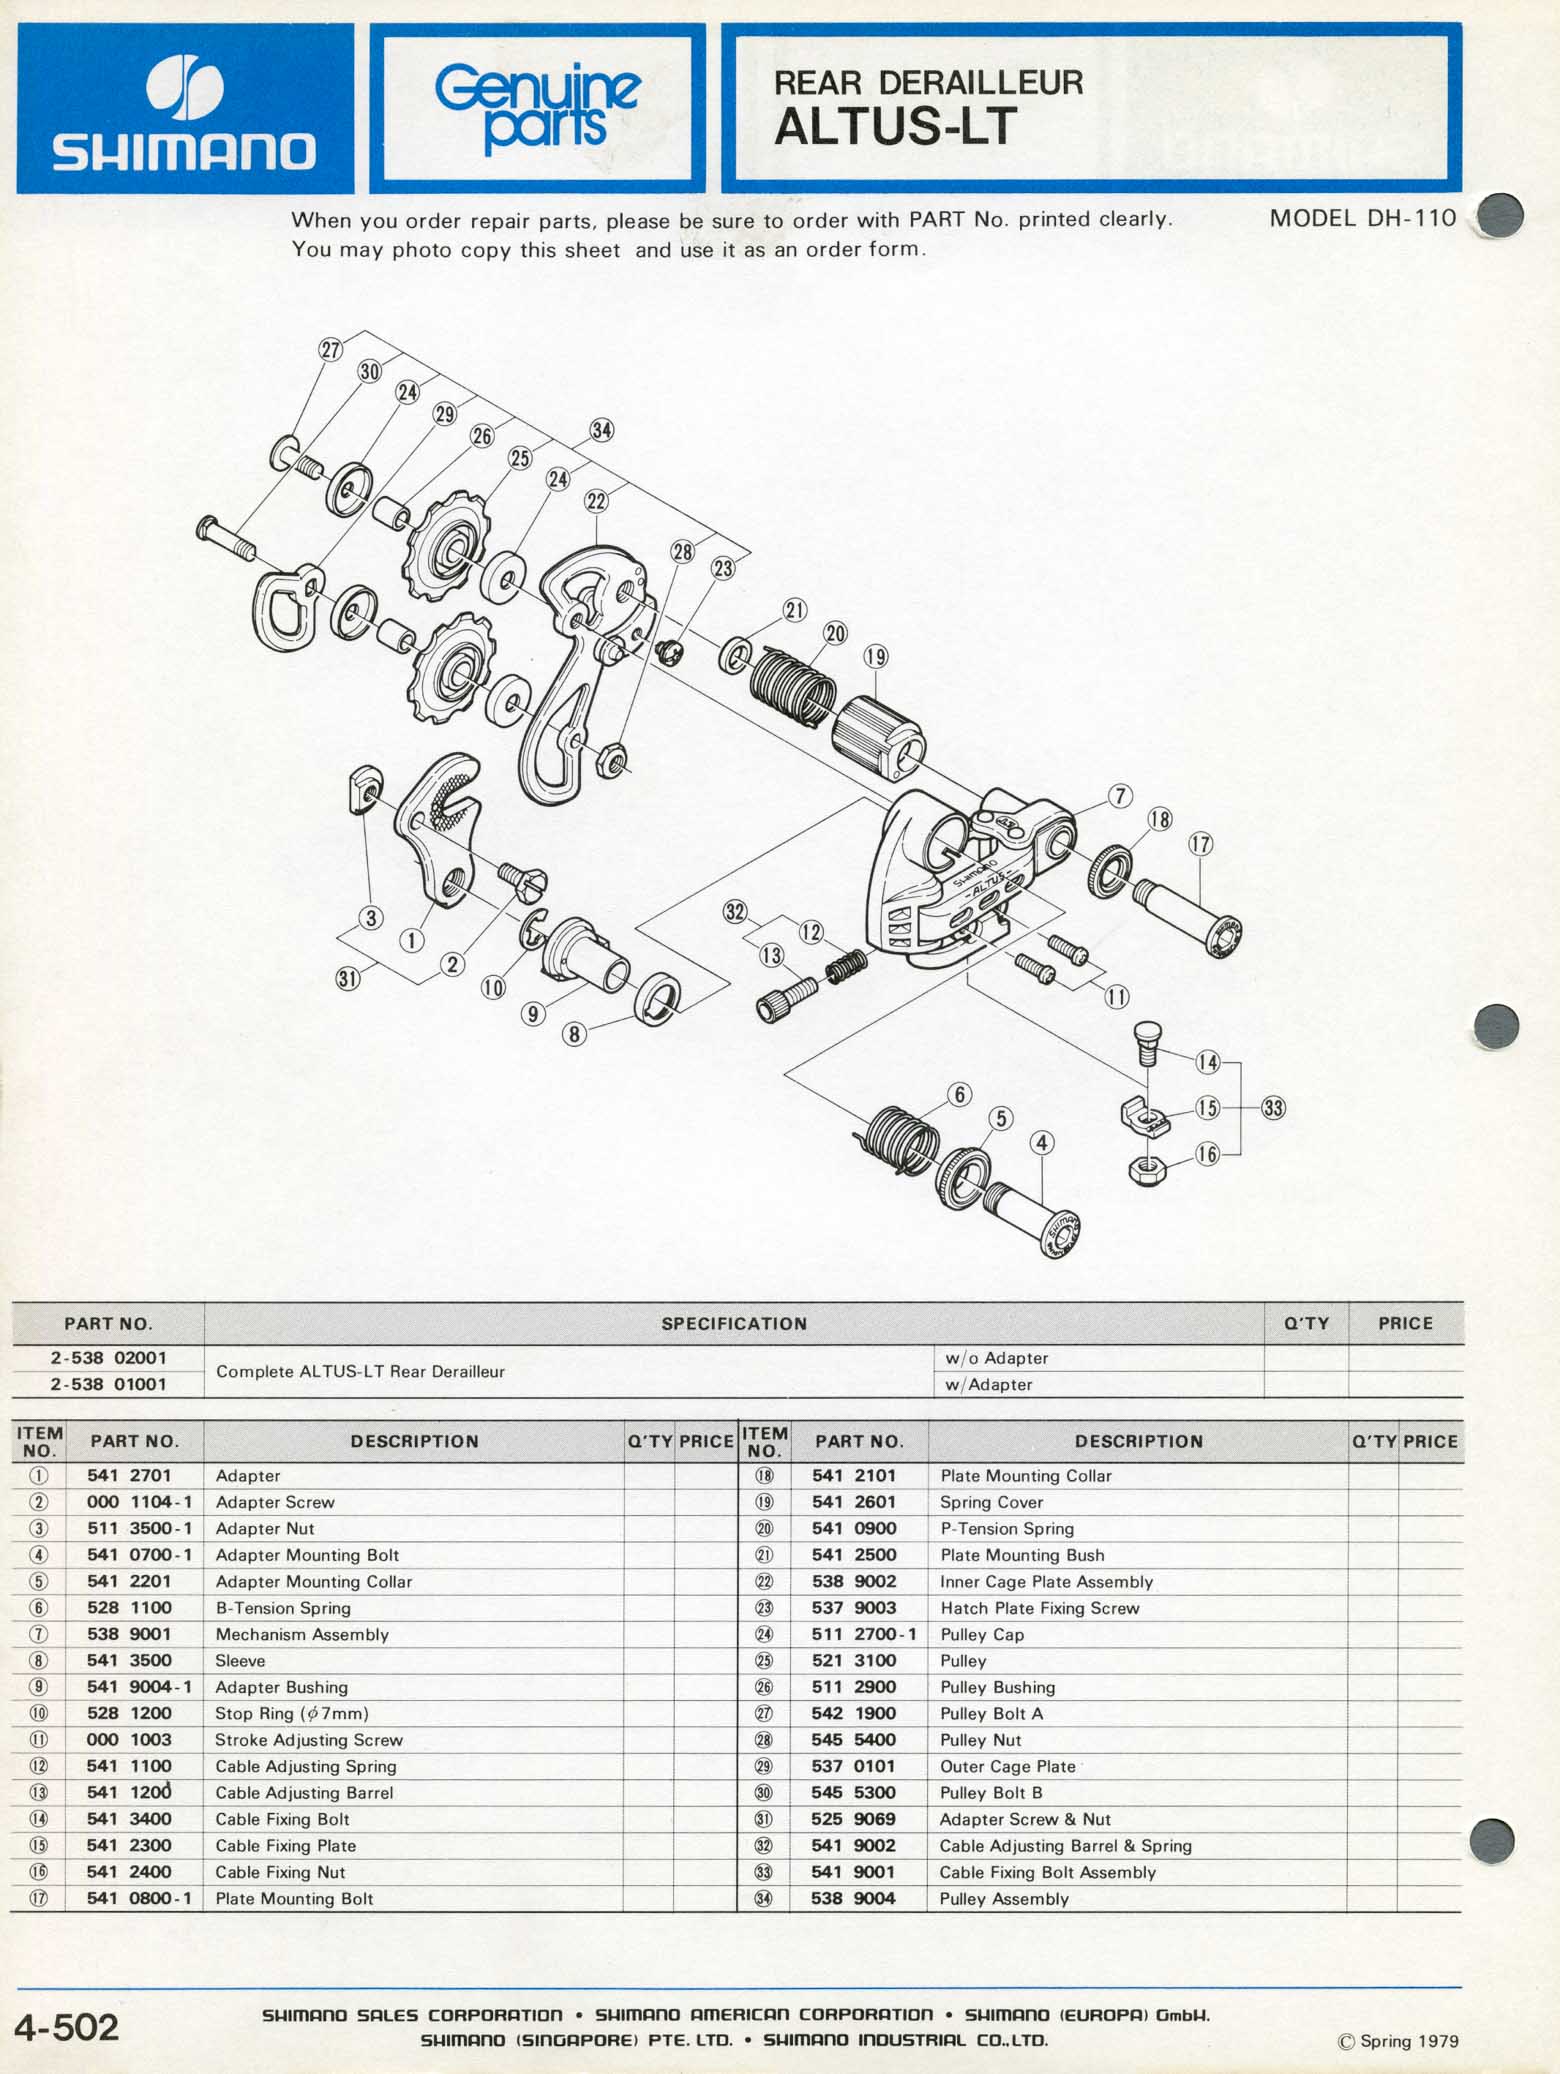 Shimano Bicycle Parts - 1979 scan 04 main image